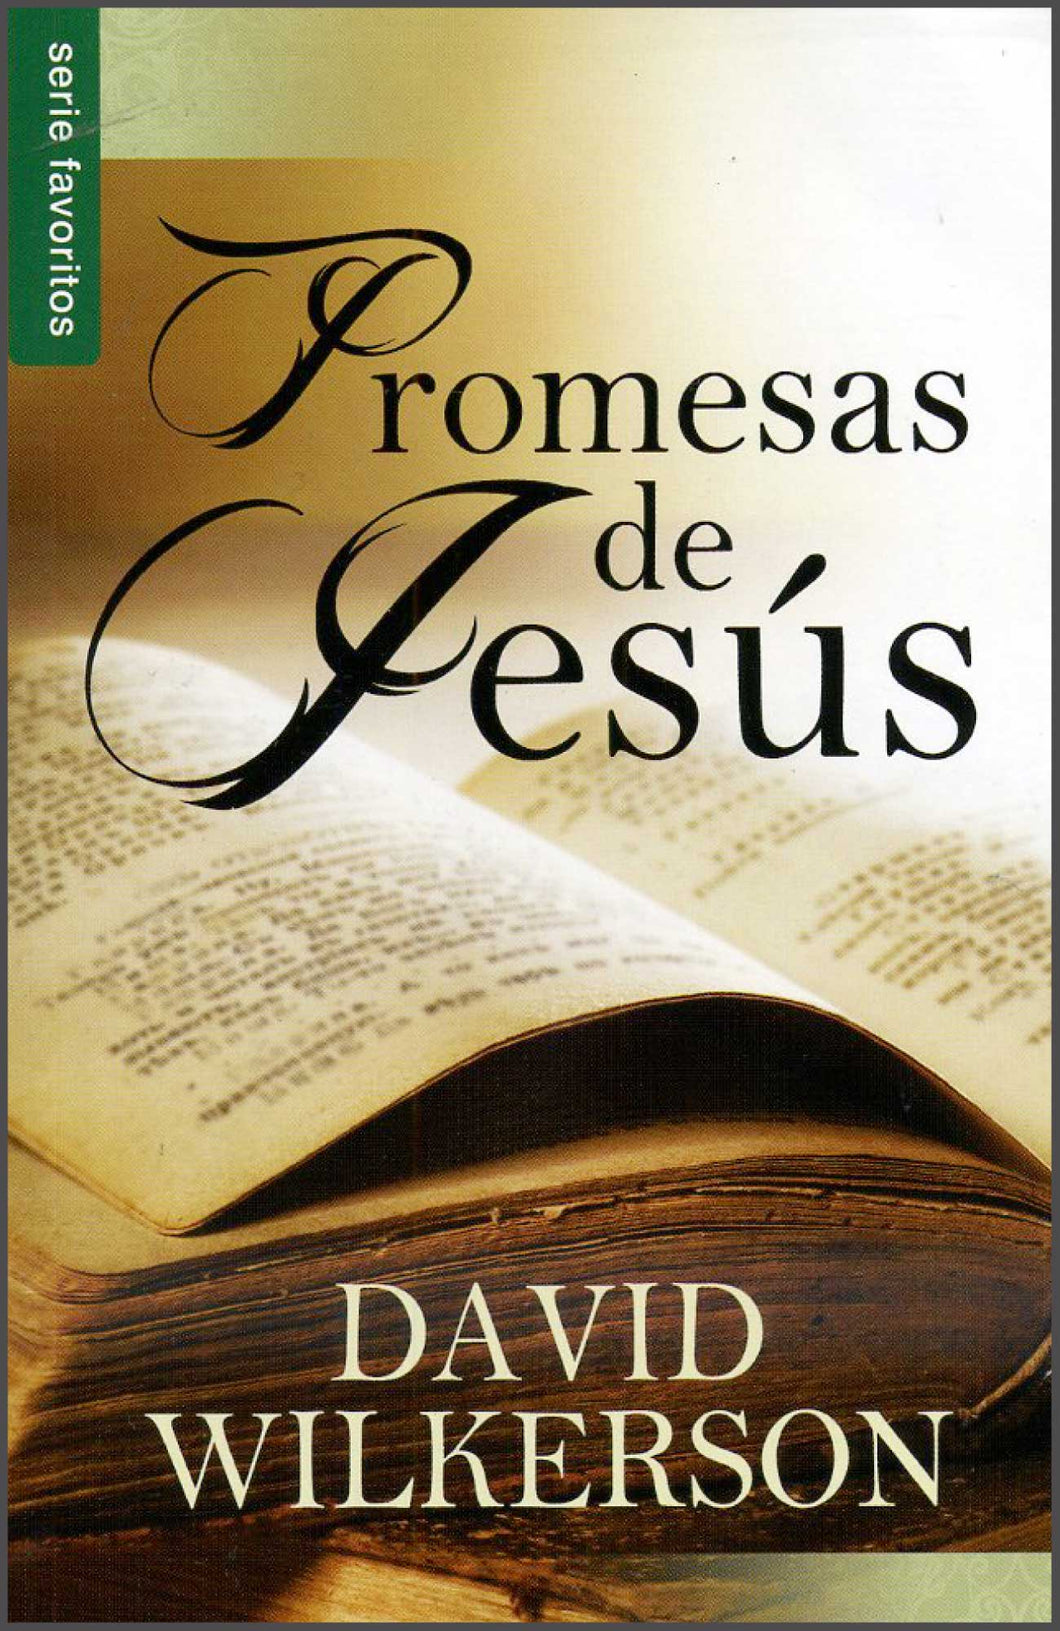 Promesas de Jesús - David Wilkerson - Tamaño Bolsillo